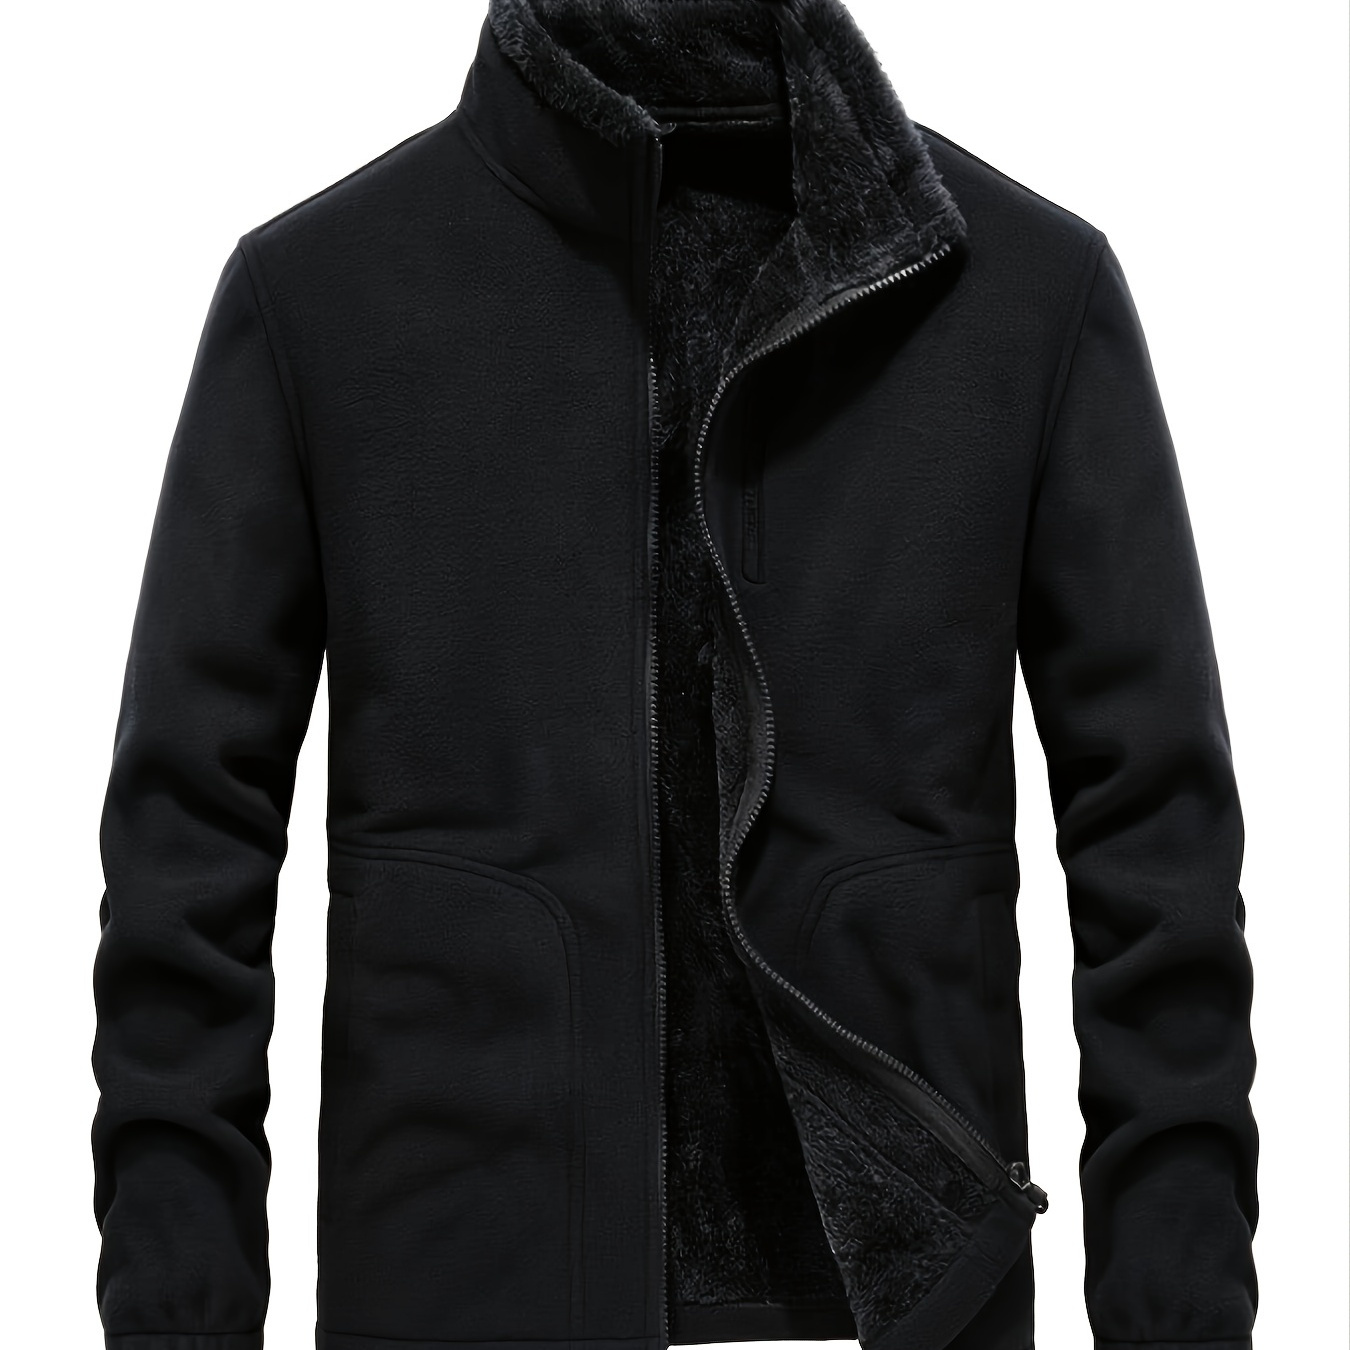 Men's Fleece Casual Jacket Winter Solid Color Zipper Stand Collar ...